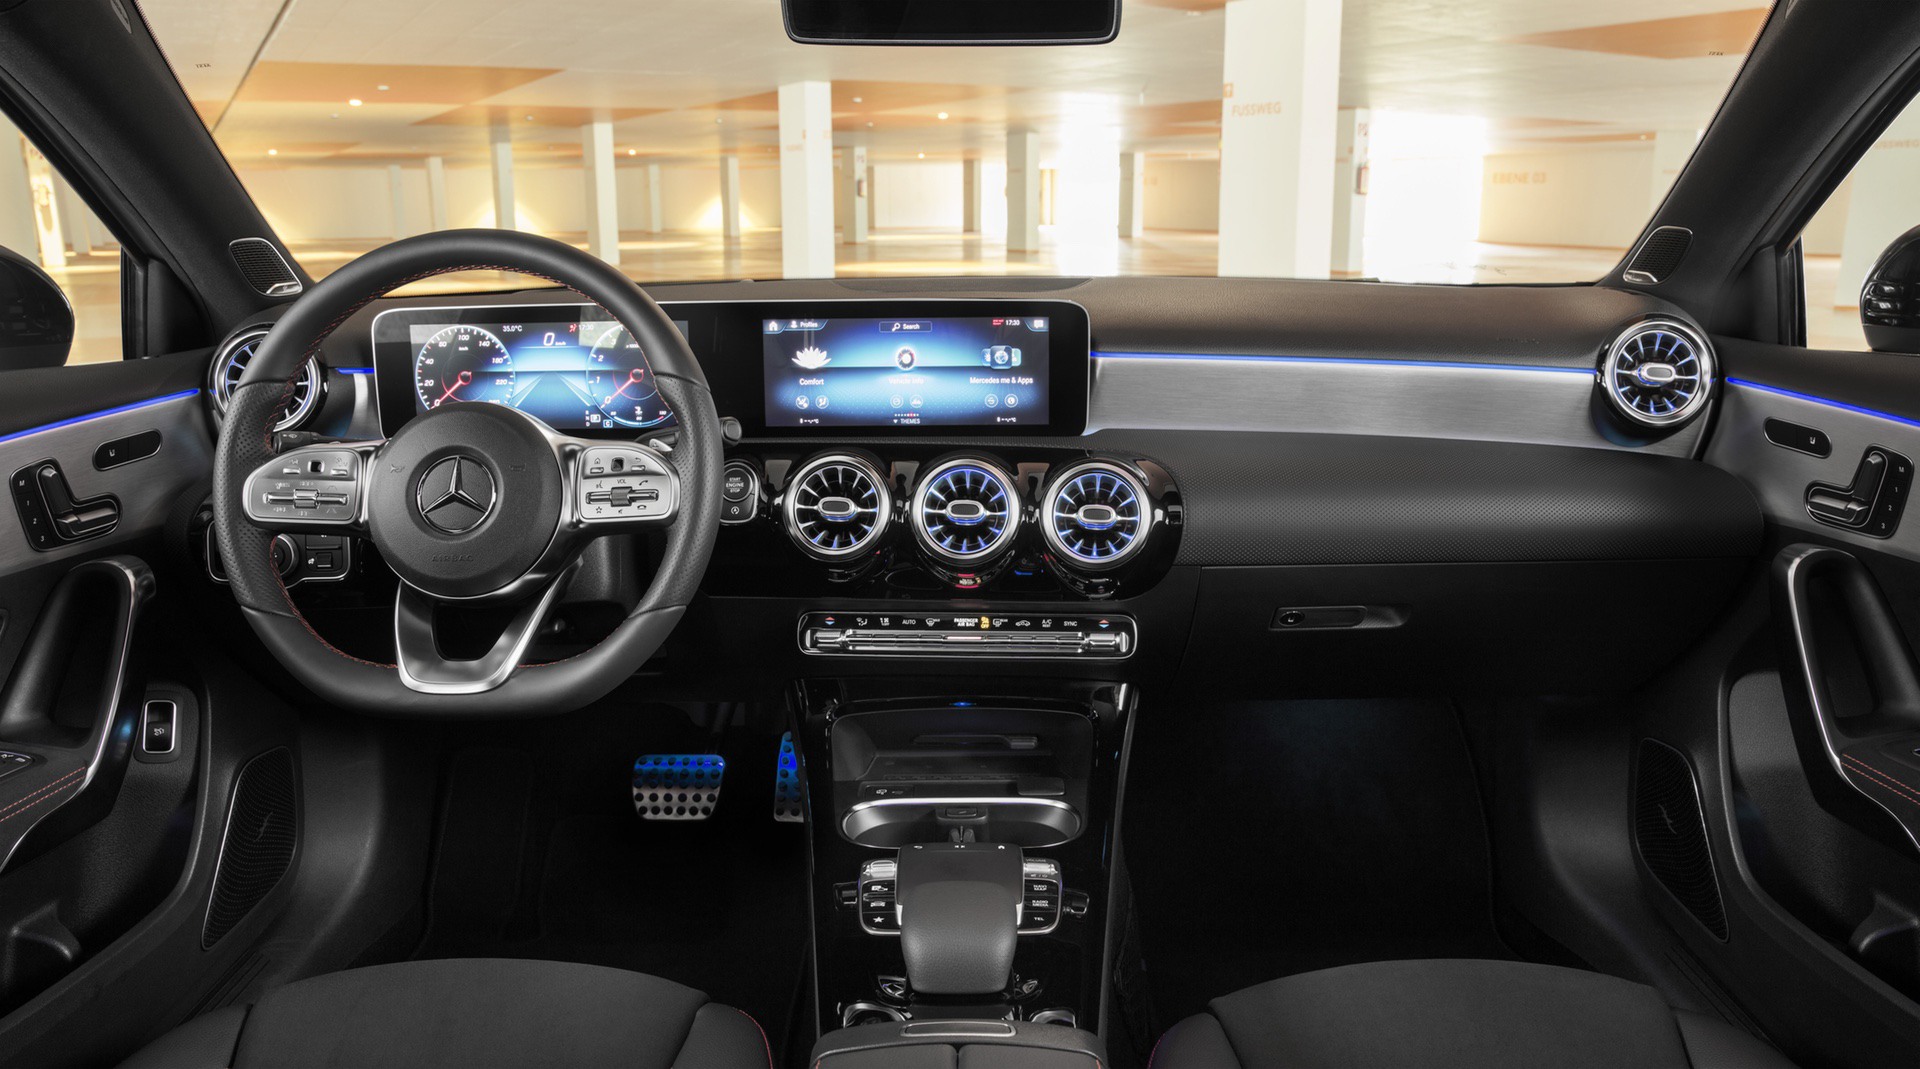 Mercedes-Benz A-Klasse Limousine, V 177, 2018 // Mercedes-Benz A-Class Sedan, V177, 2018